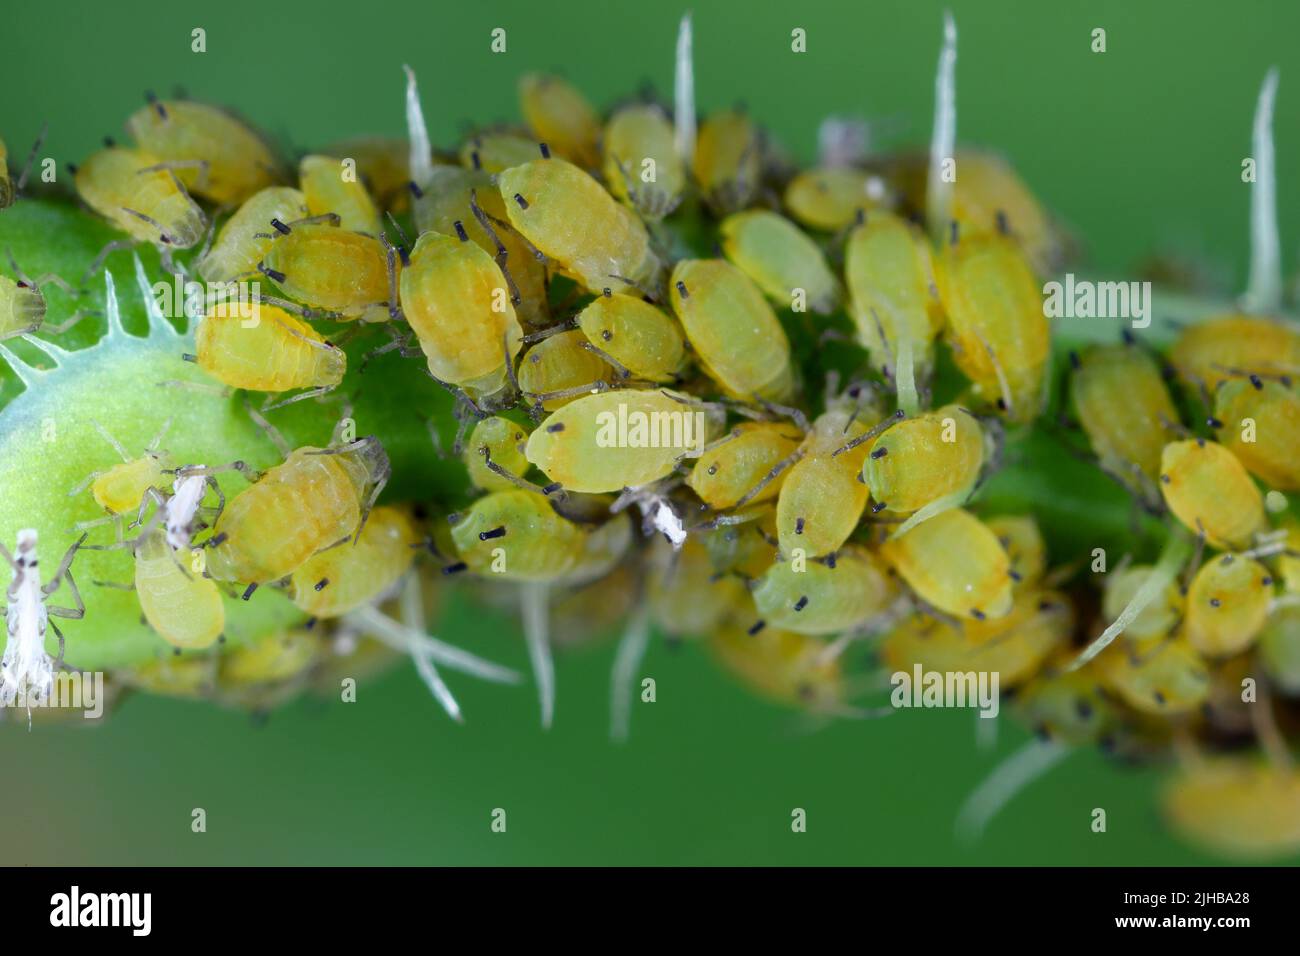 Kolonie der Baumwollaphid (auch Melonenaphid und Baumwollaphid genannt) Aphis gossypii auf der Crepis-Pflanze. Stockfoto